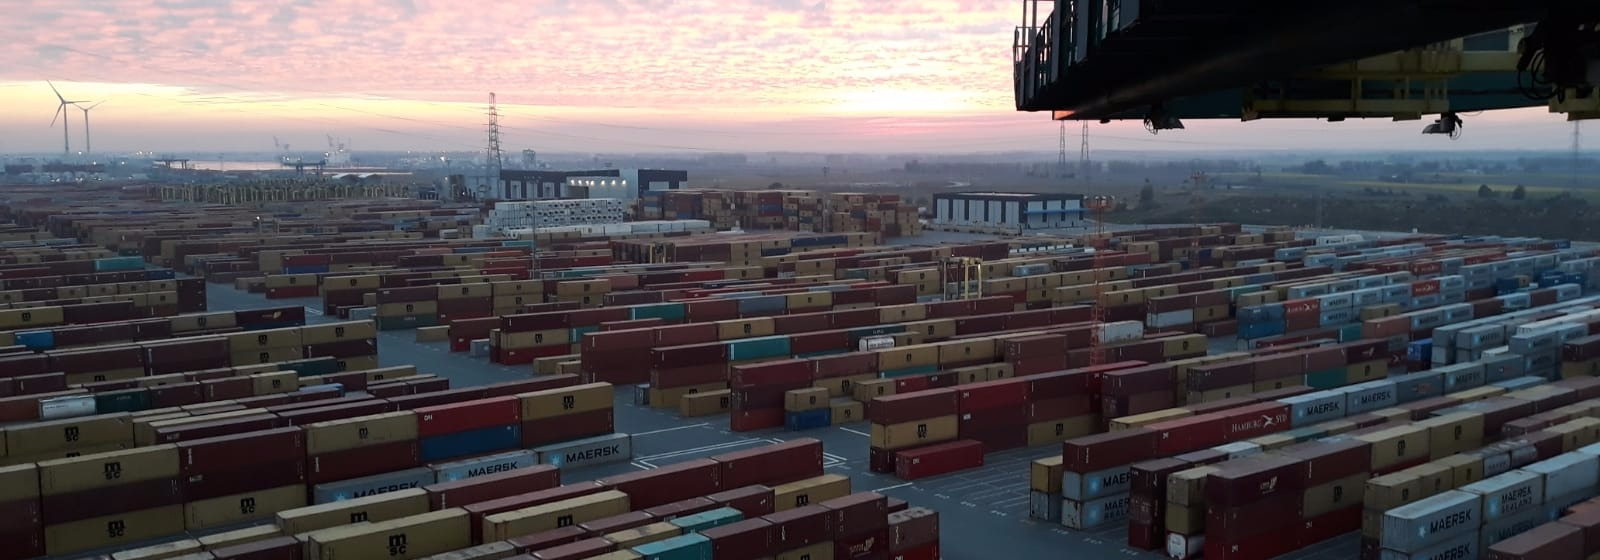 Containers Containerterminal Antwerpen Zicht uit kraan